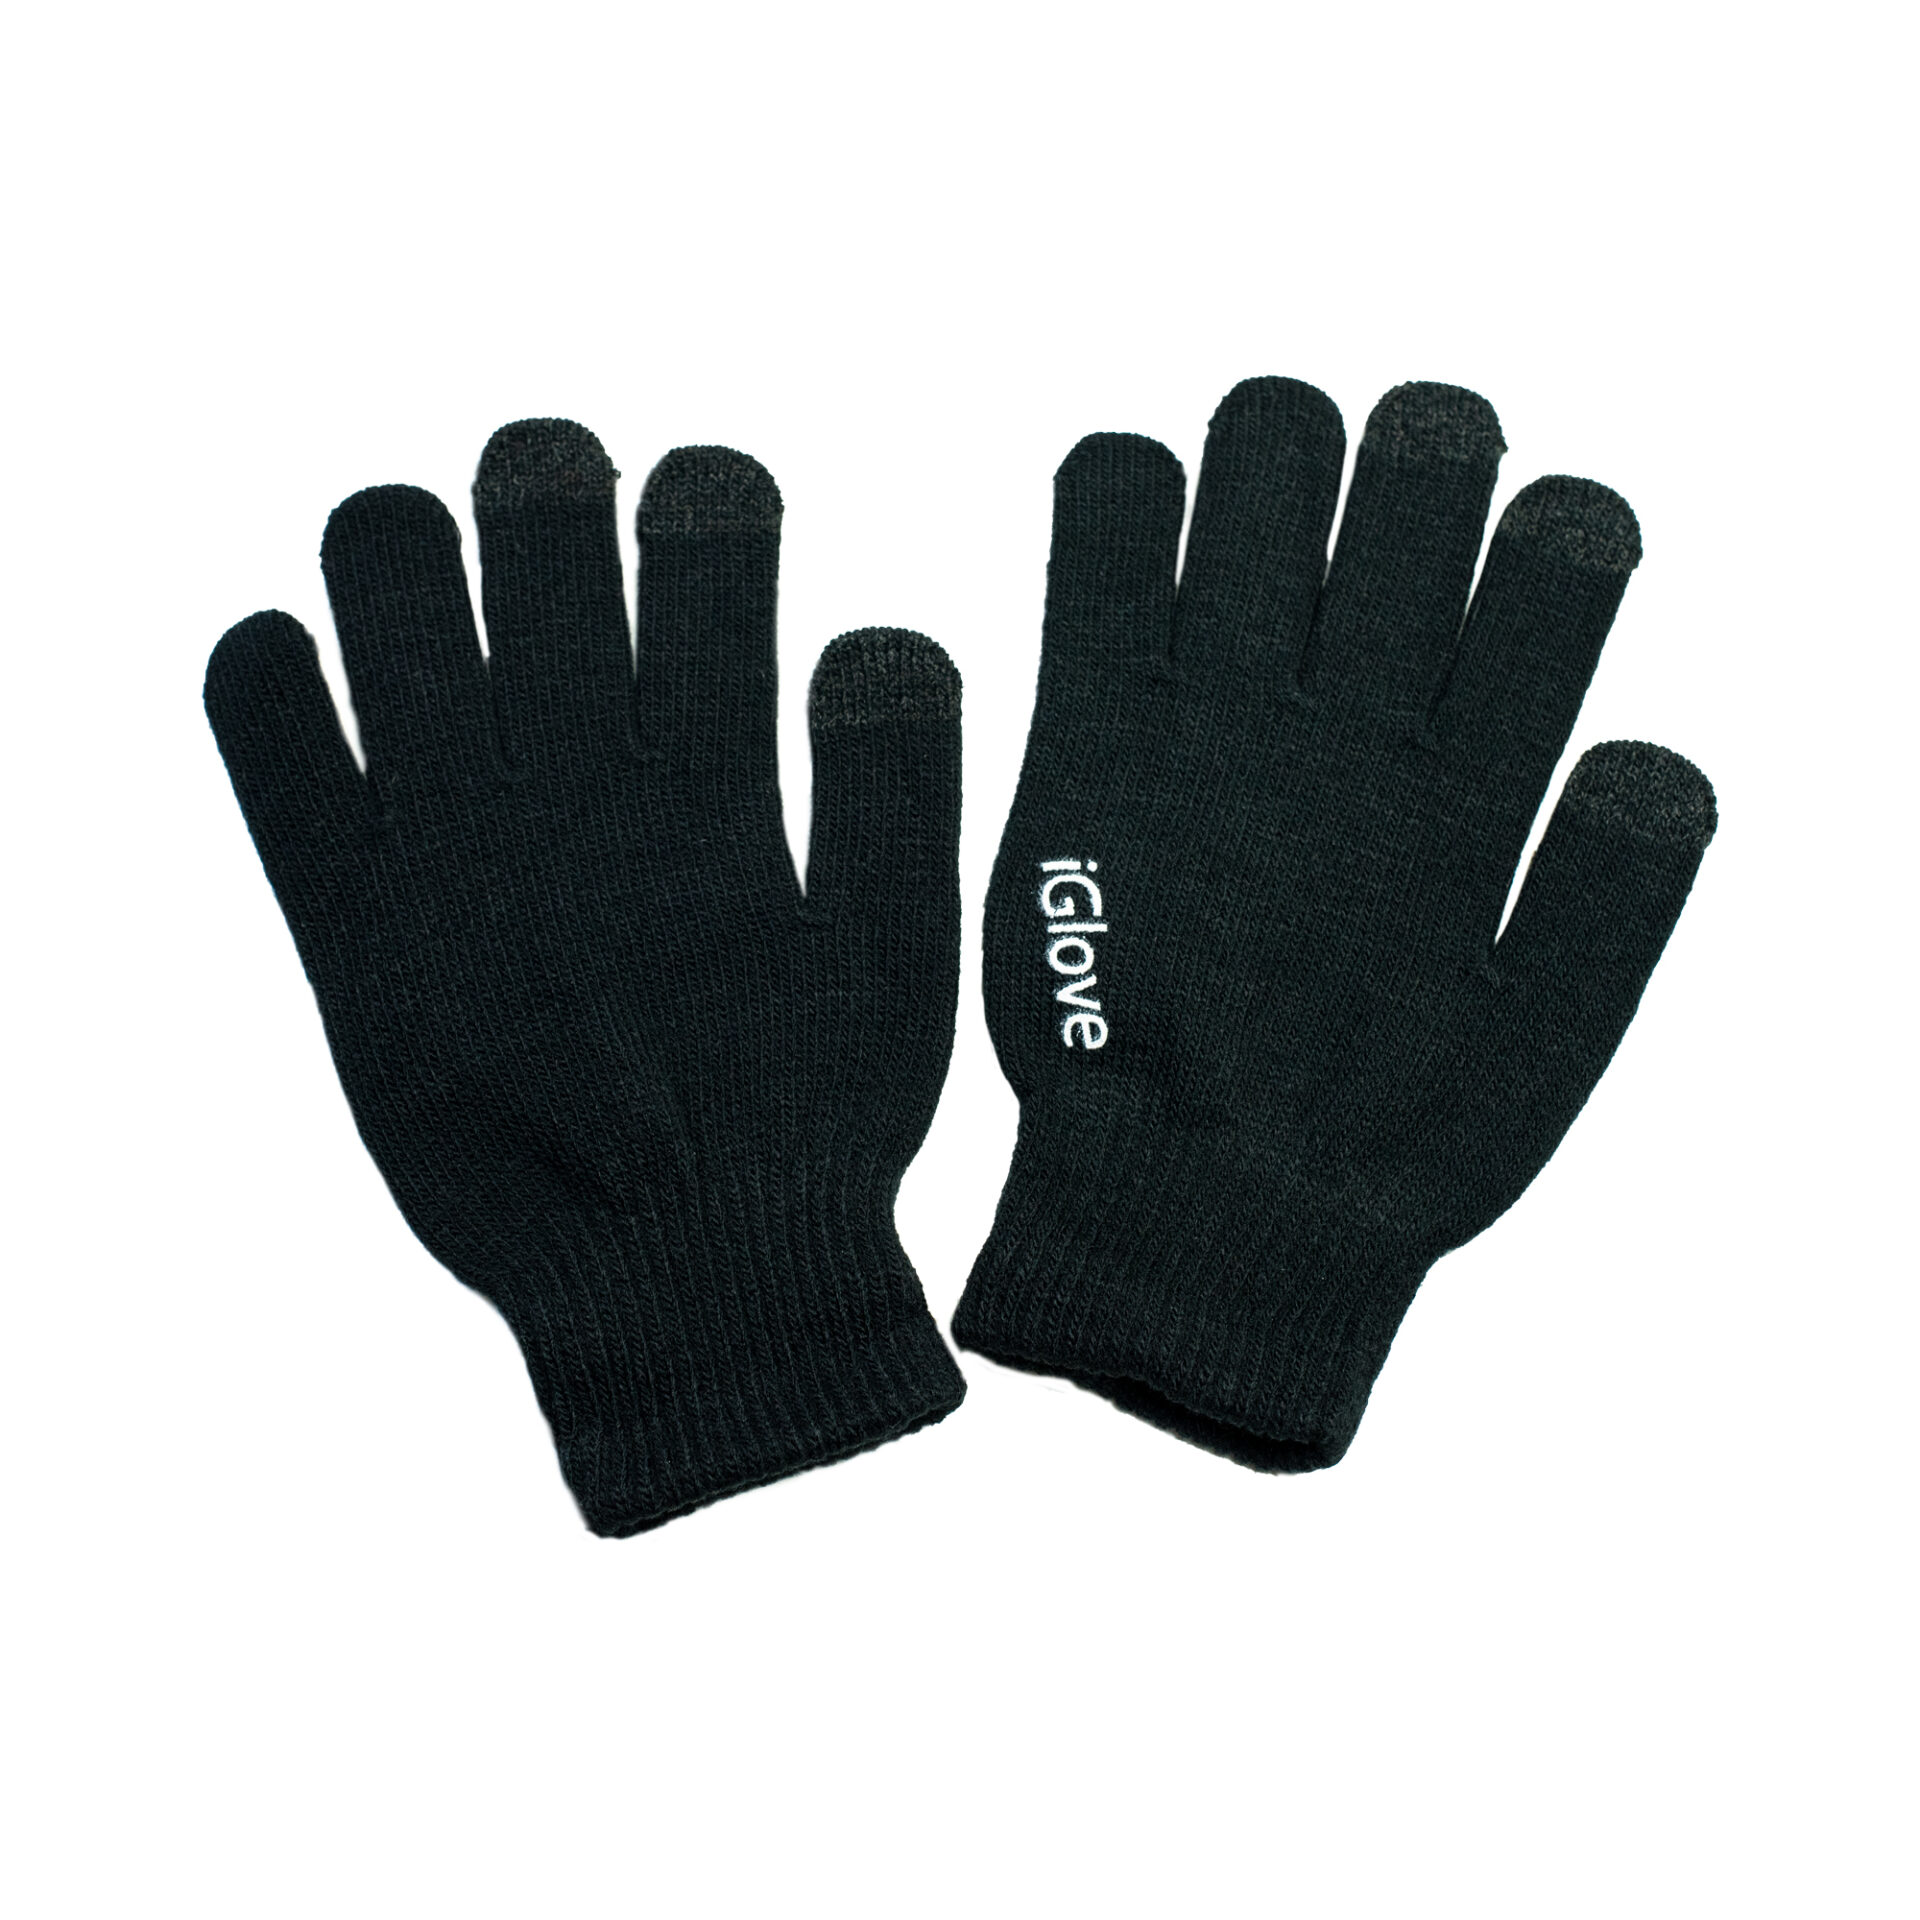 OMEK International black gloves on white background